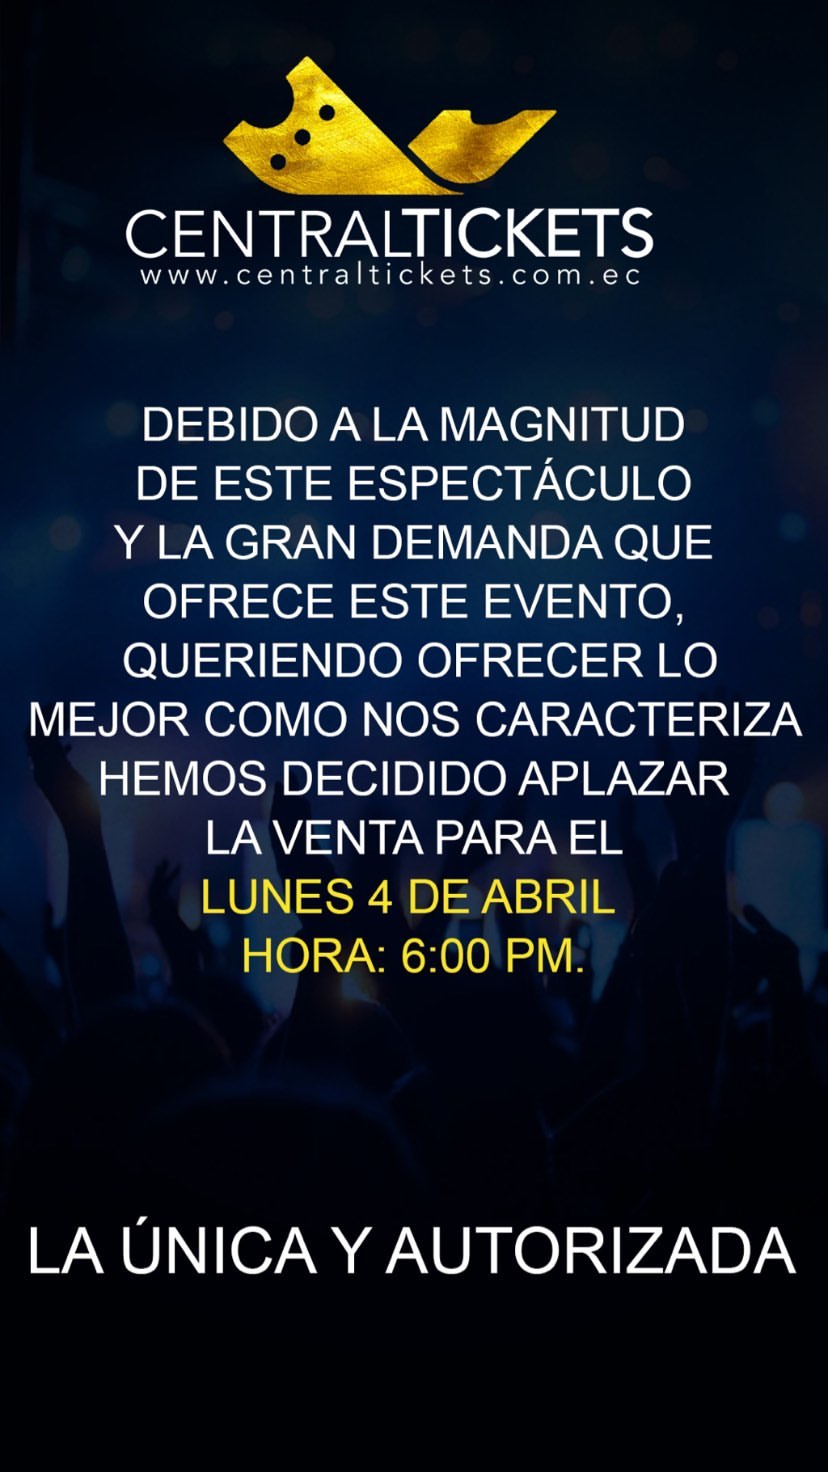 Daddy Yankee Guayaquil Central Tickets Nueva Fecha de Venta (1)